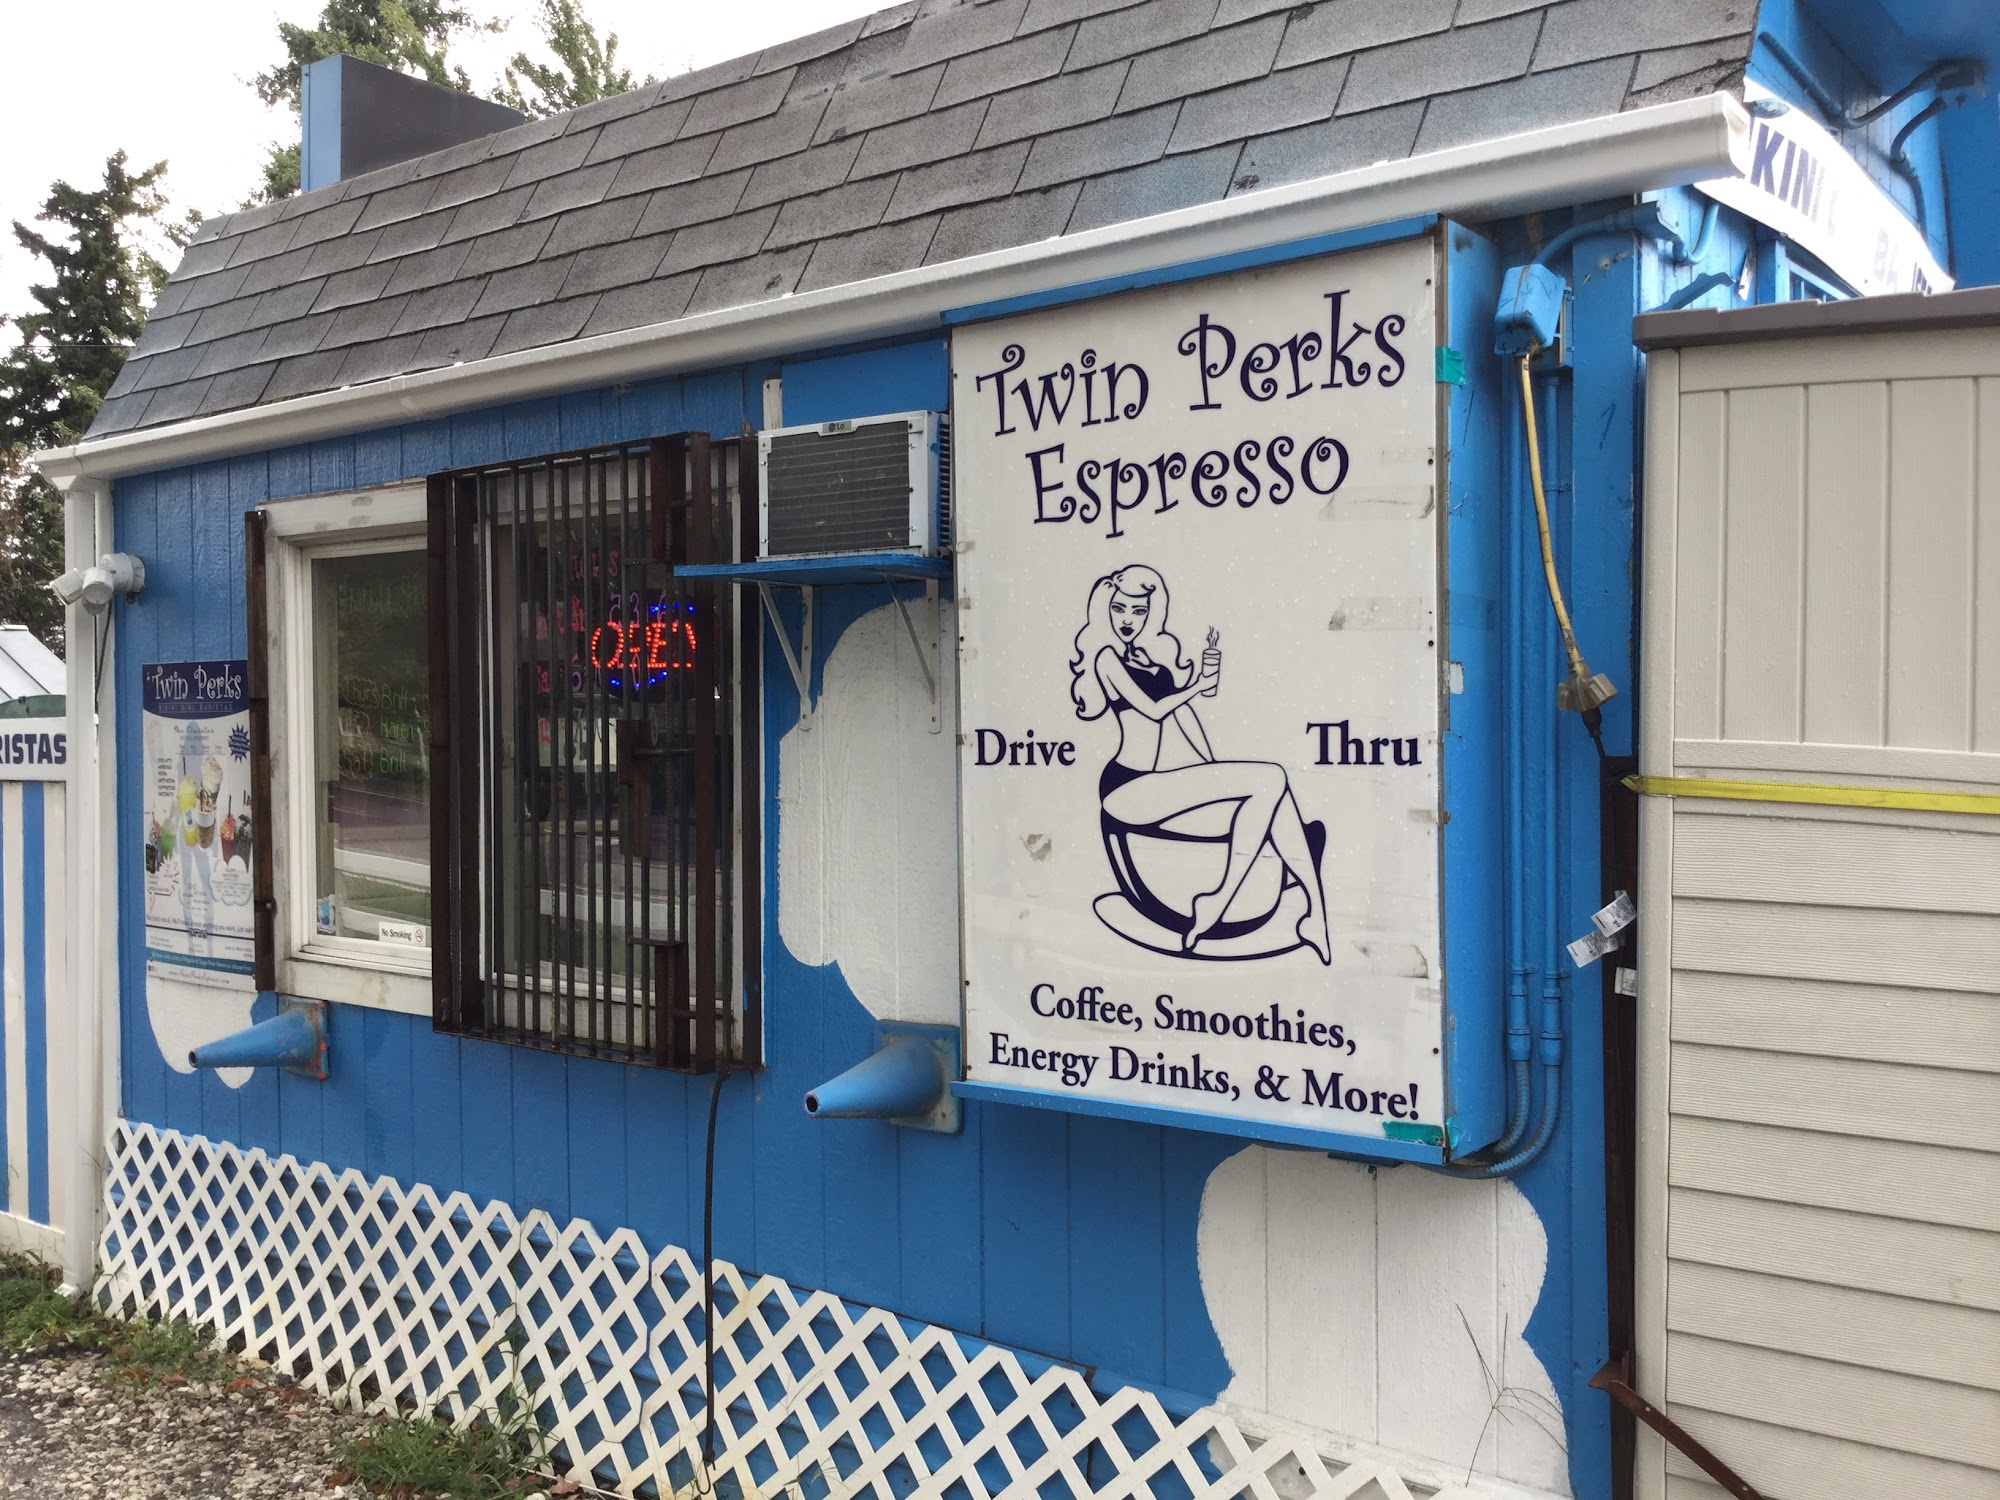 Twin Perks Espresso